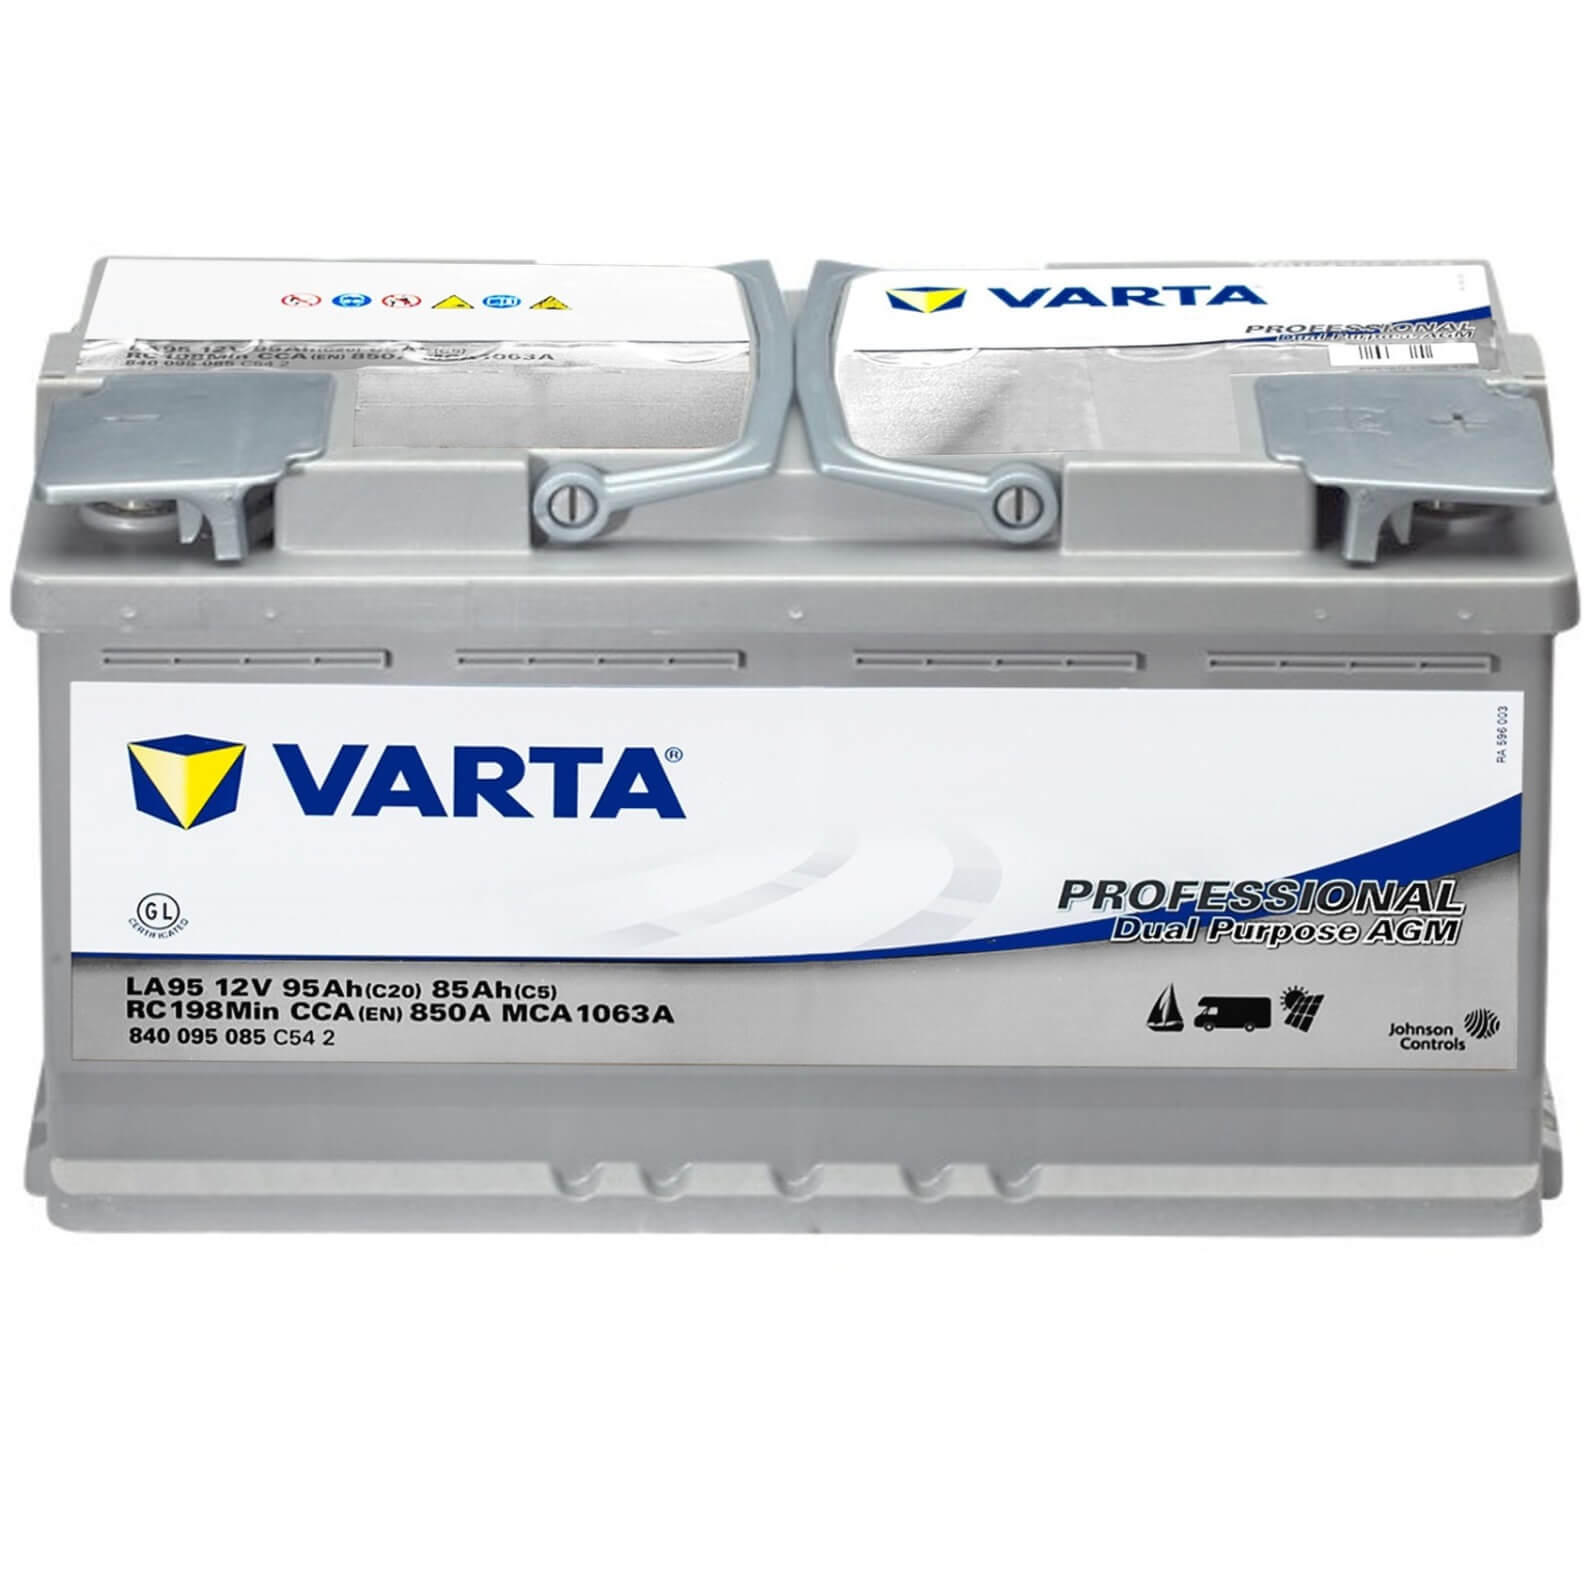 Varta LED95. Batería Varta 95Ah 12V